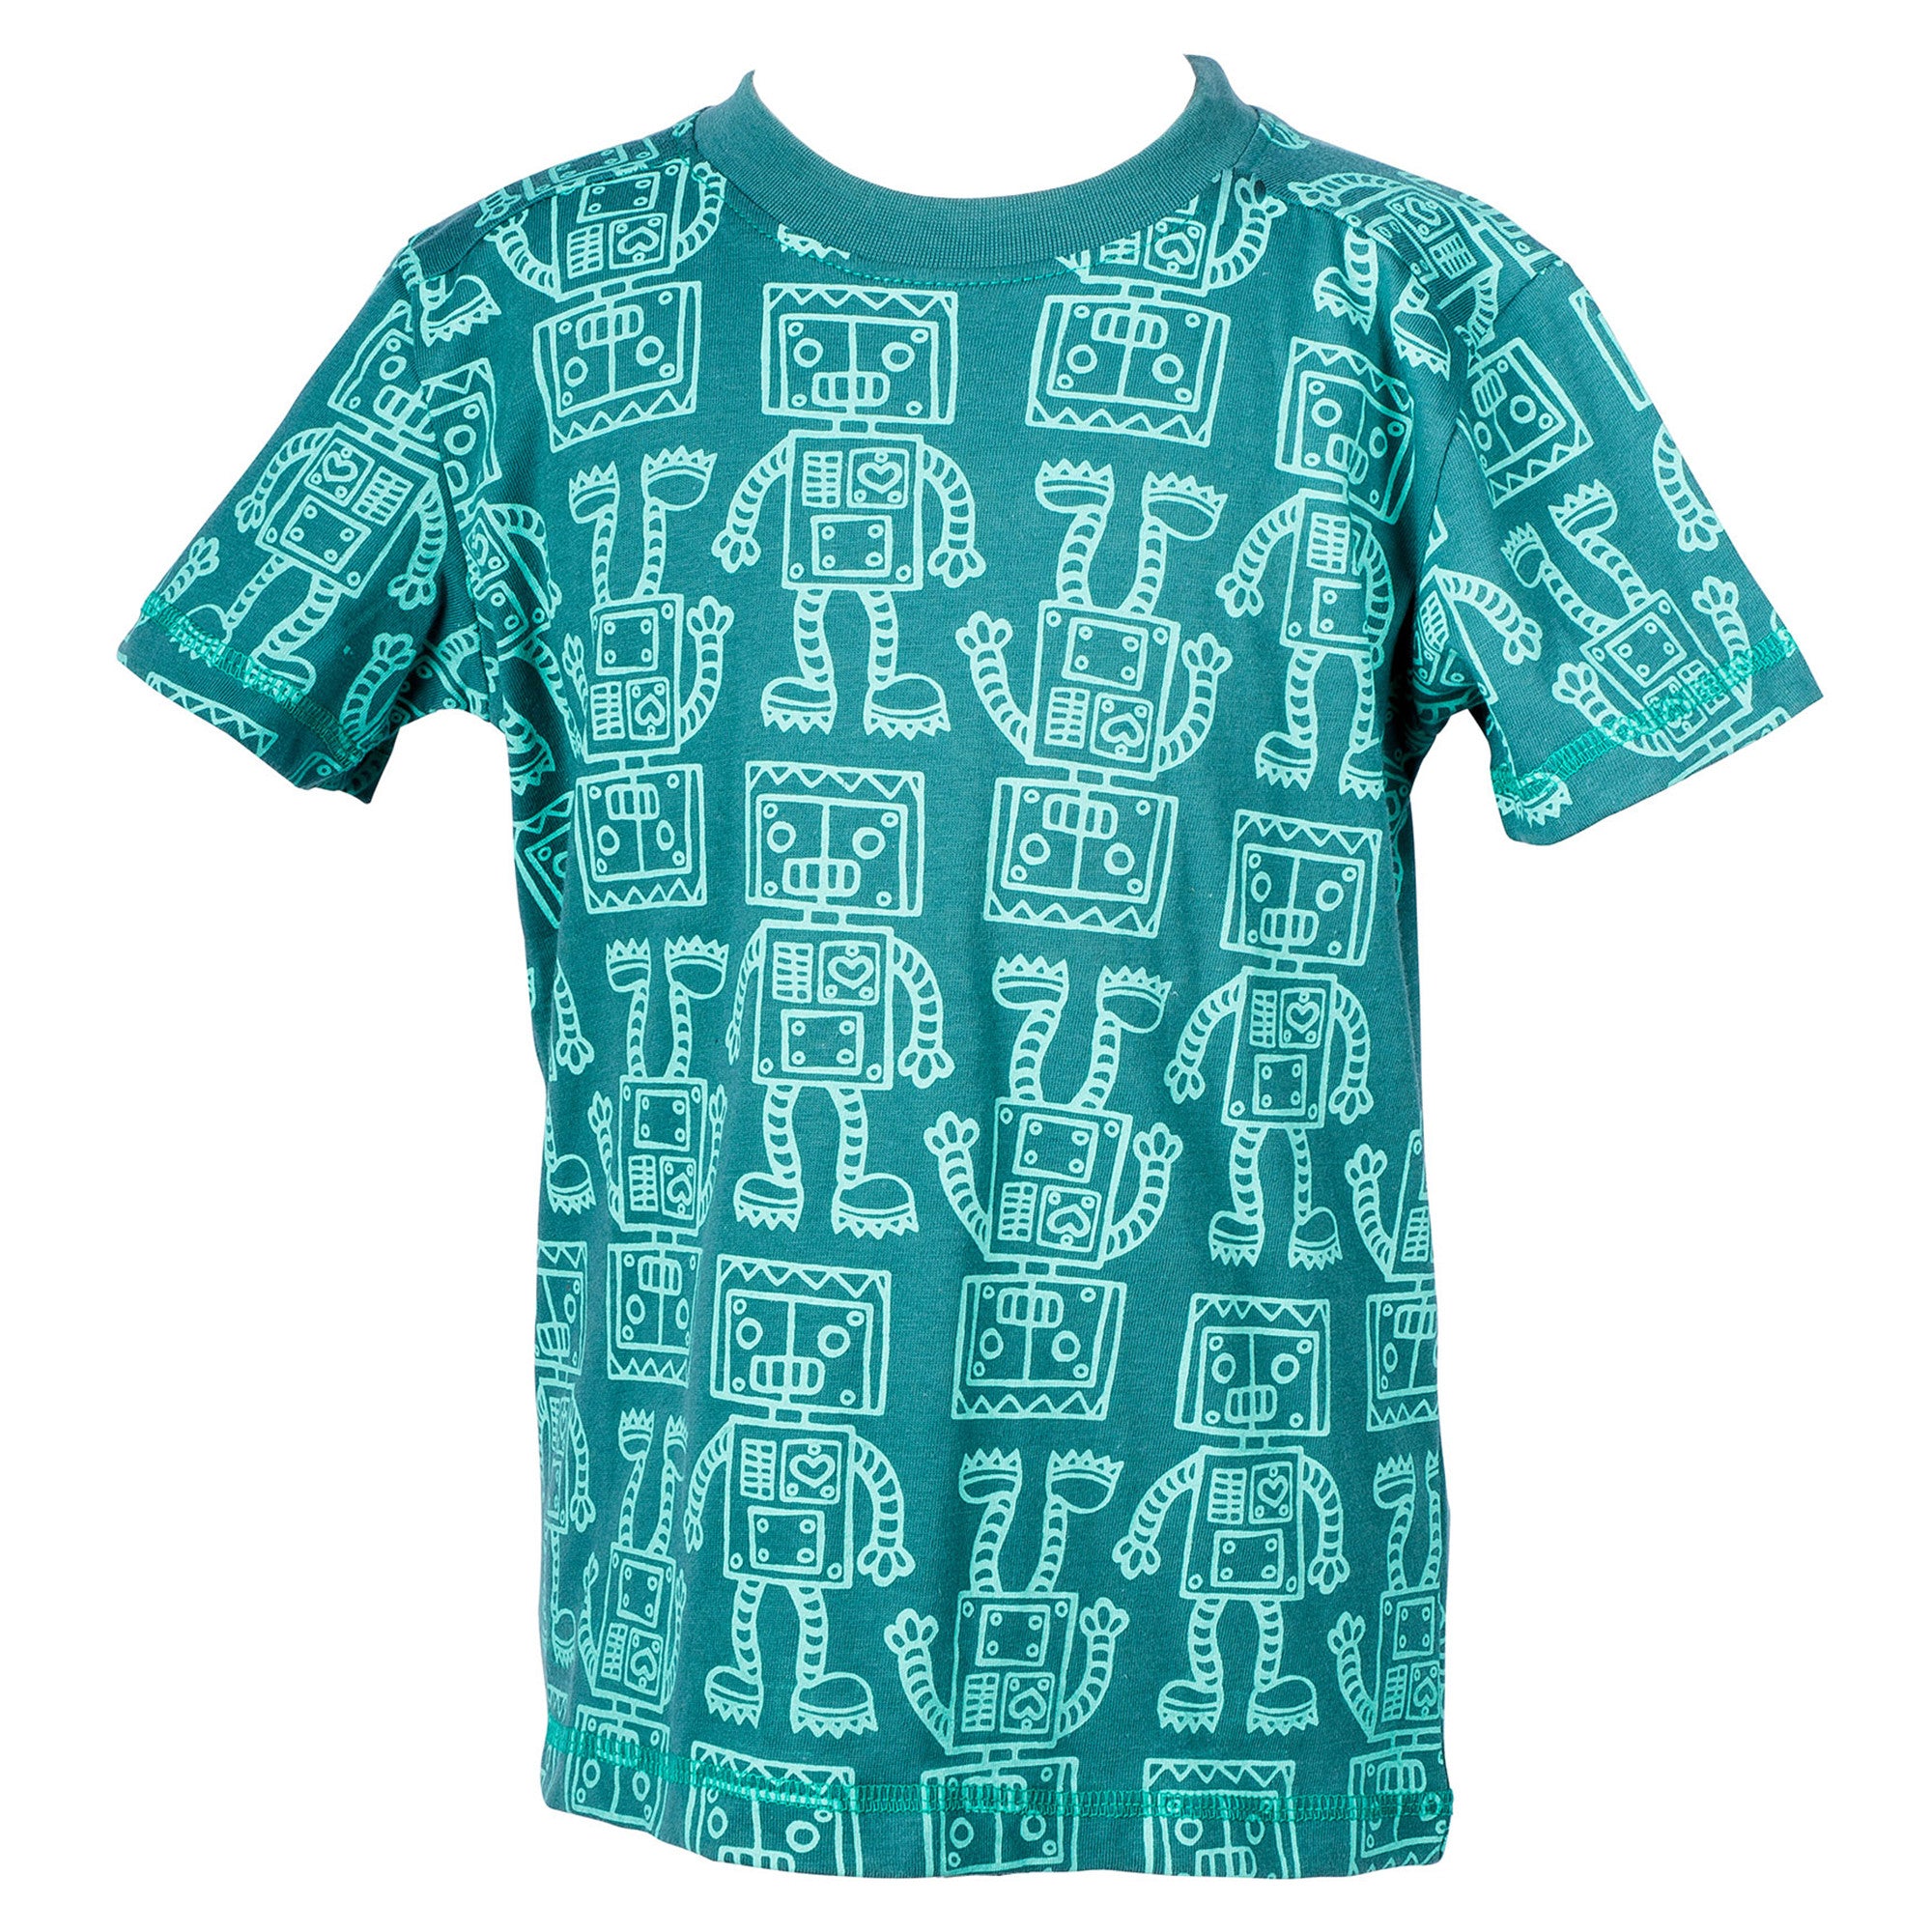 Green Robots boy's t-shirt